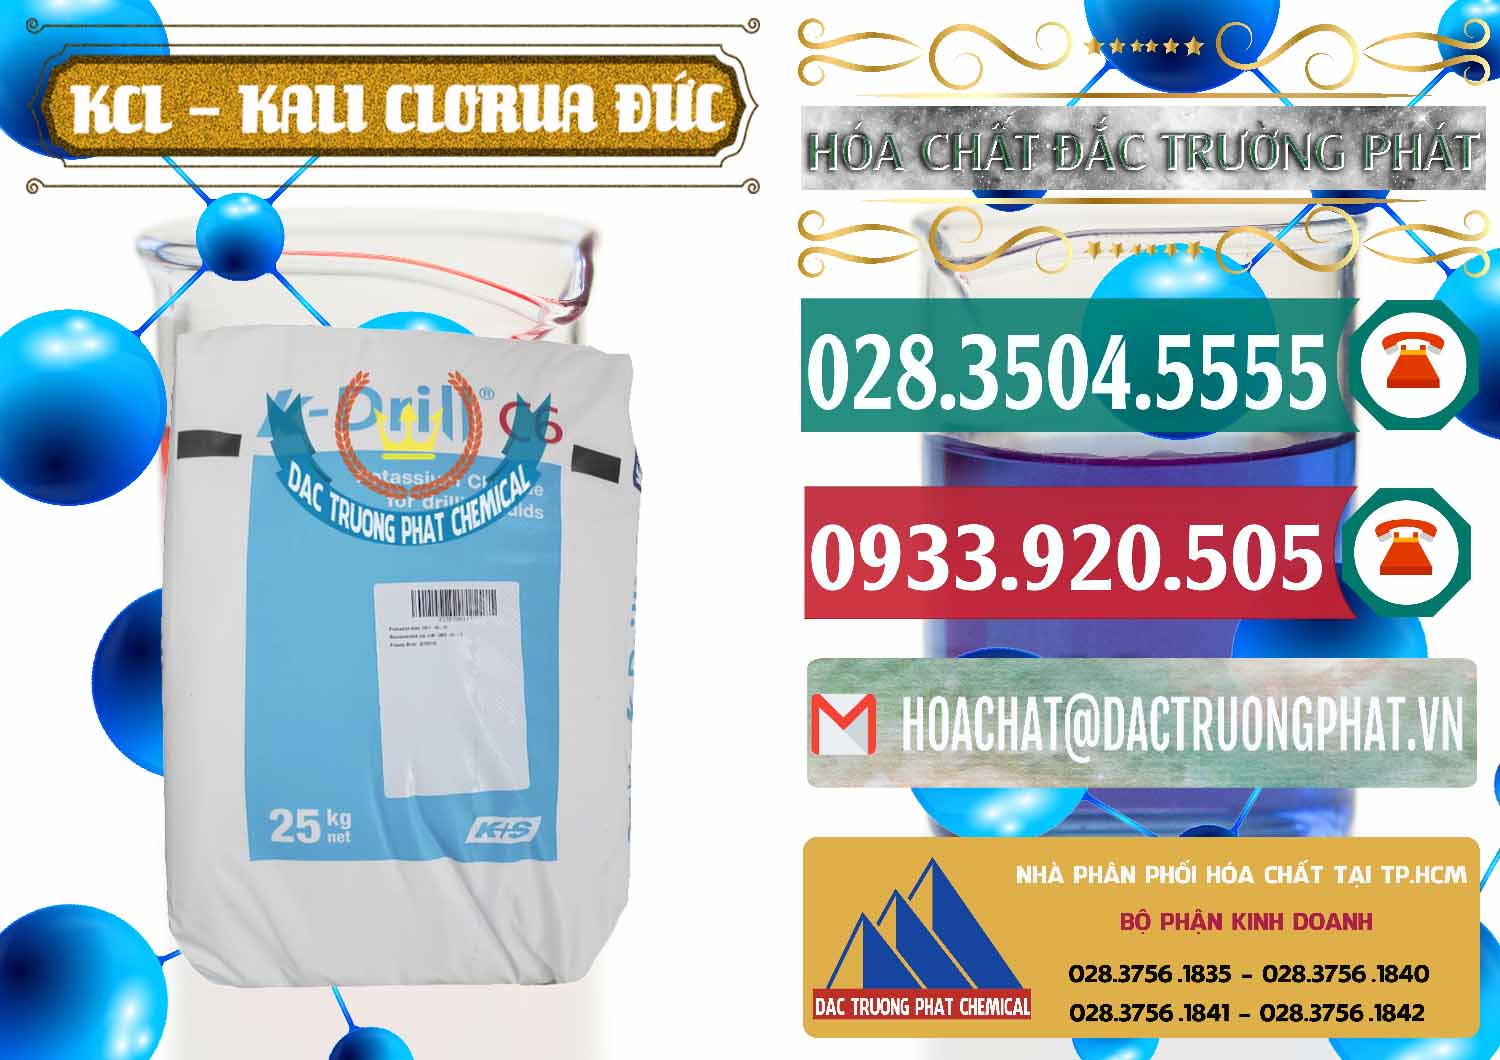 Công ty chuyên cung cấp và bán KCL – Kali Clorua Trắng K DRILL Đức Germany - 0428 - Cty chuyên nhập khẩu ( cung cấp ) hóa chất tại TP.HCM - muabanhoachat.vn